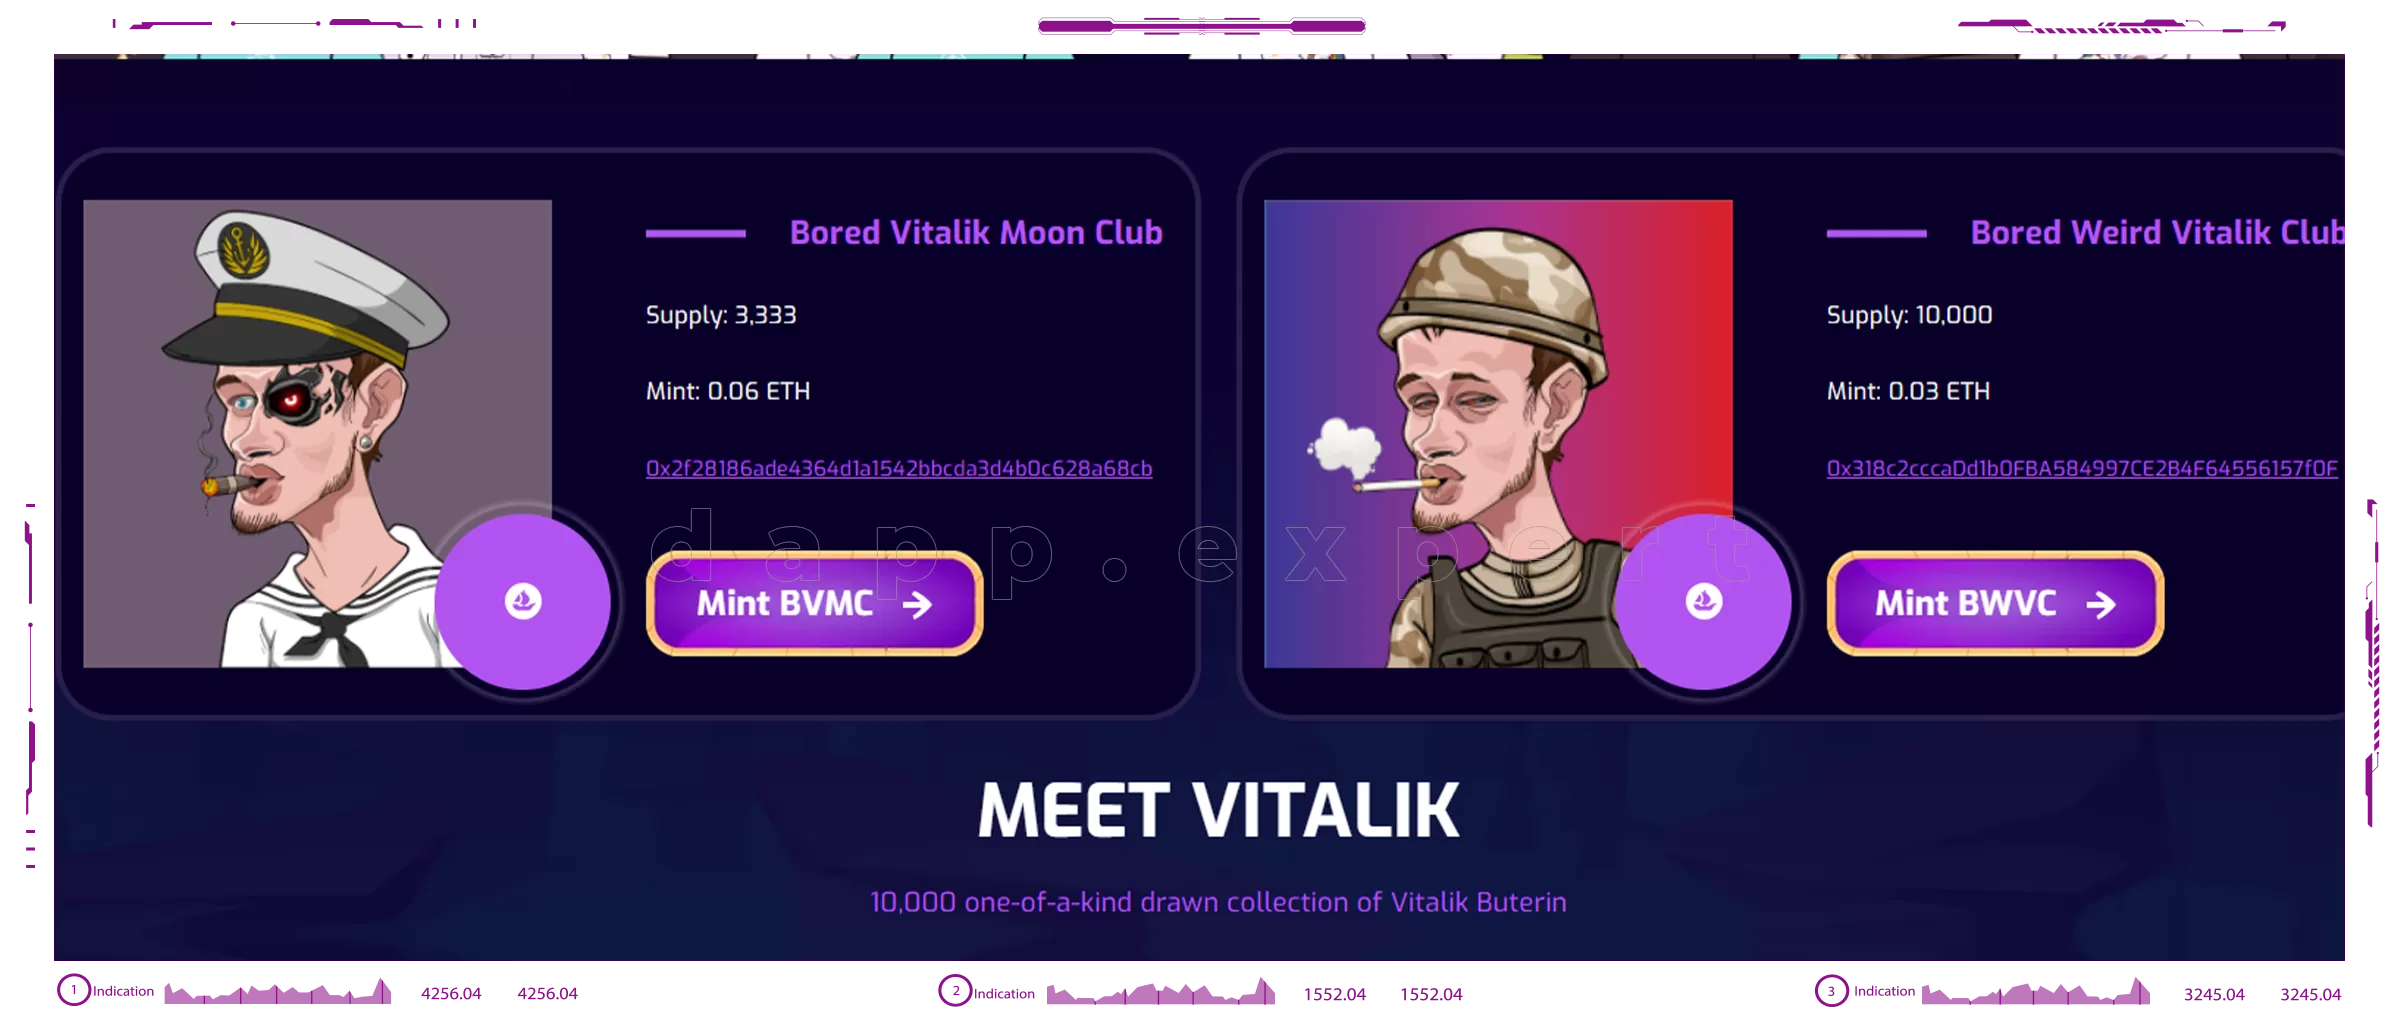 Dapp Bored Vitalik Moon Club